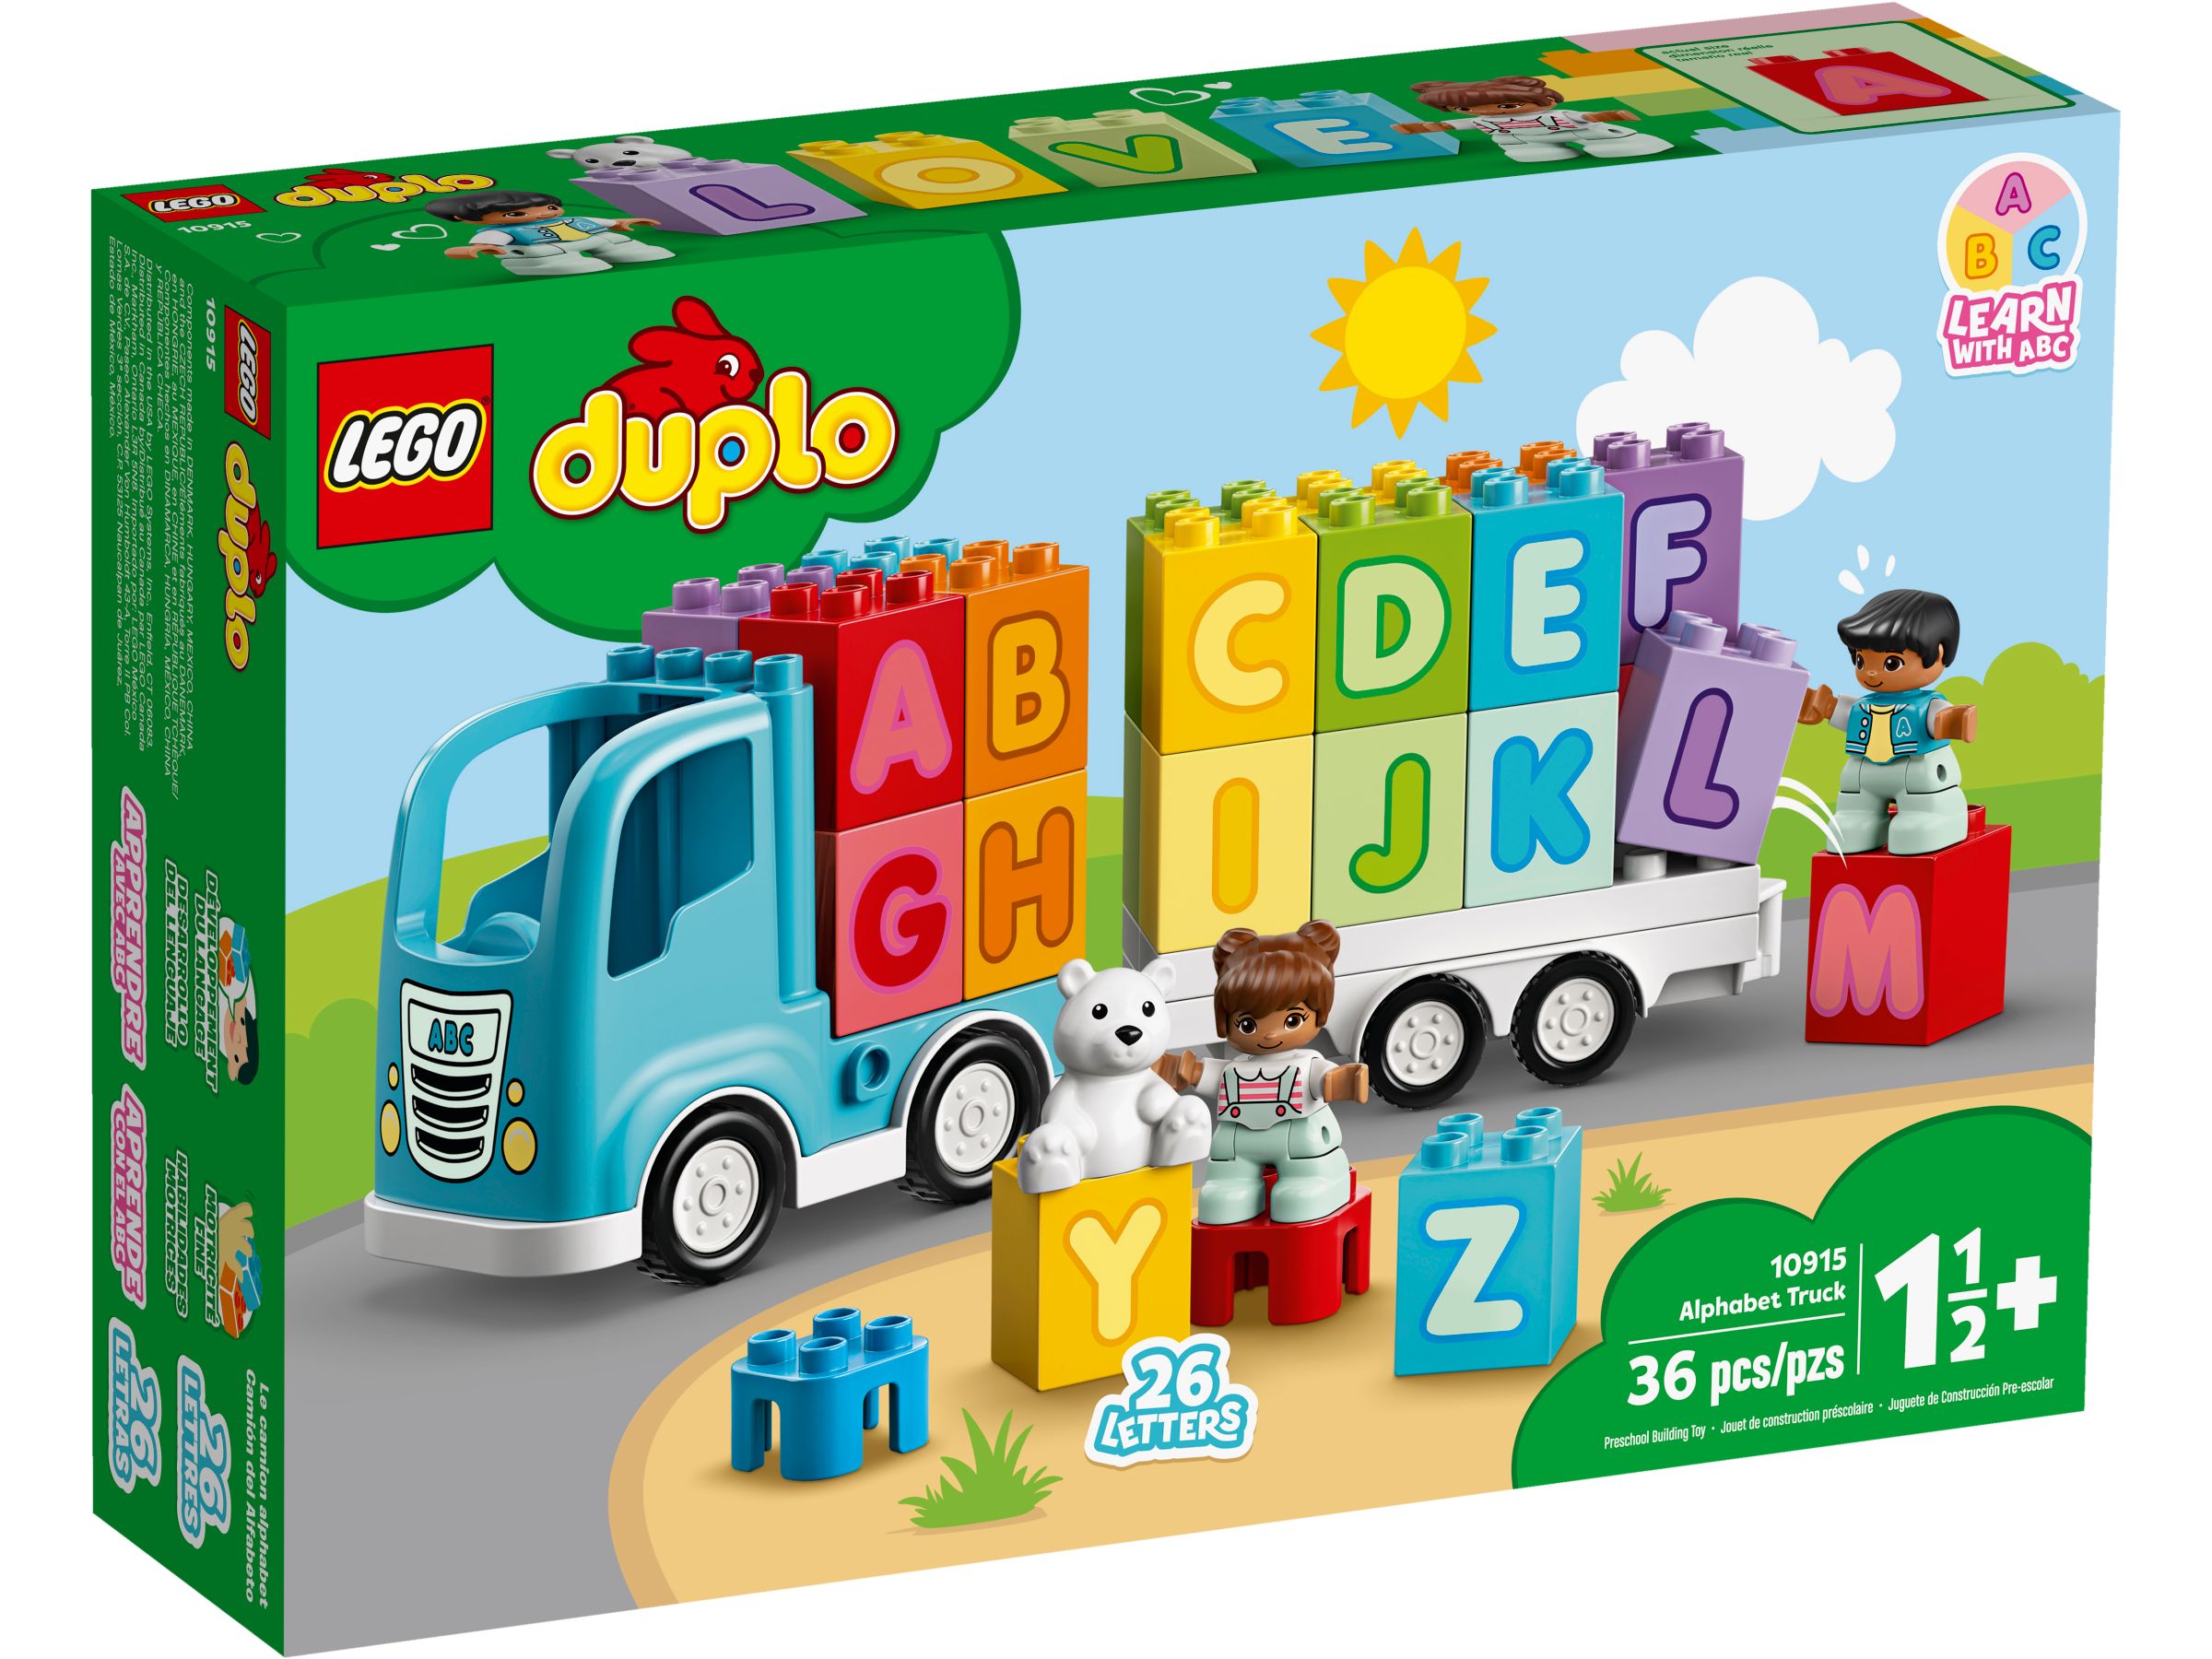 LEGO Duplo 10915 Mein erster ABC-Lastwagen LEGO_10915_alt1.jpg